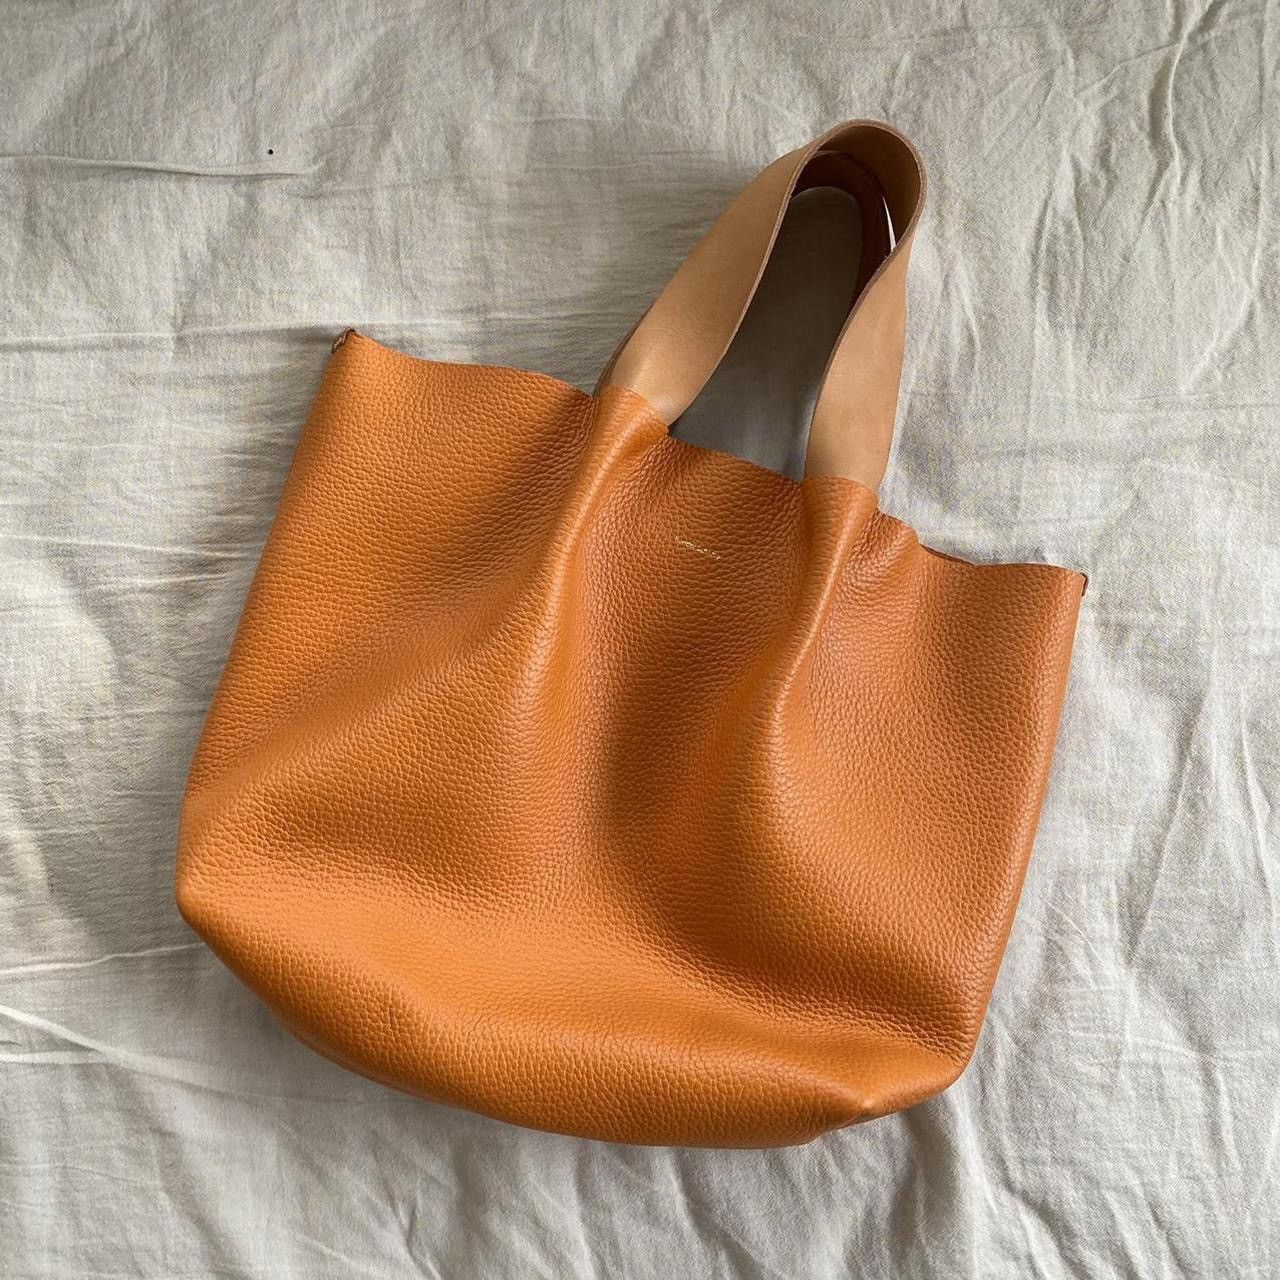 Hender Scheme Orange Piano Bag in Medium | Grailed